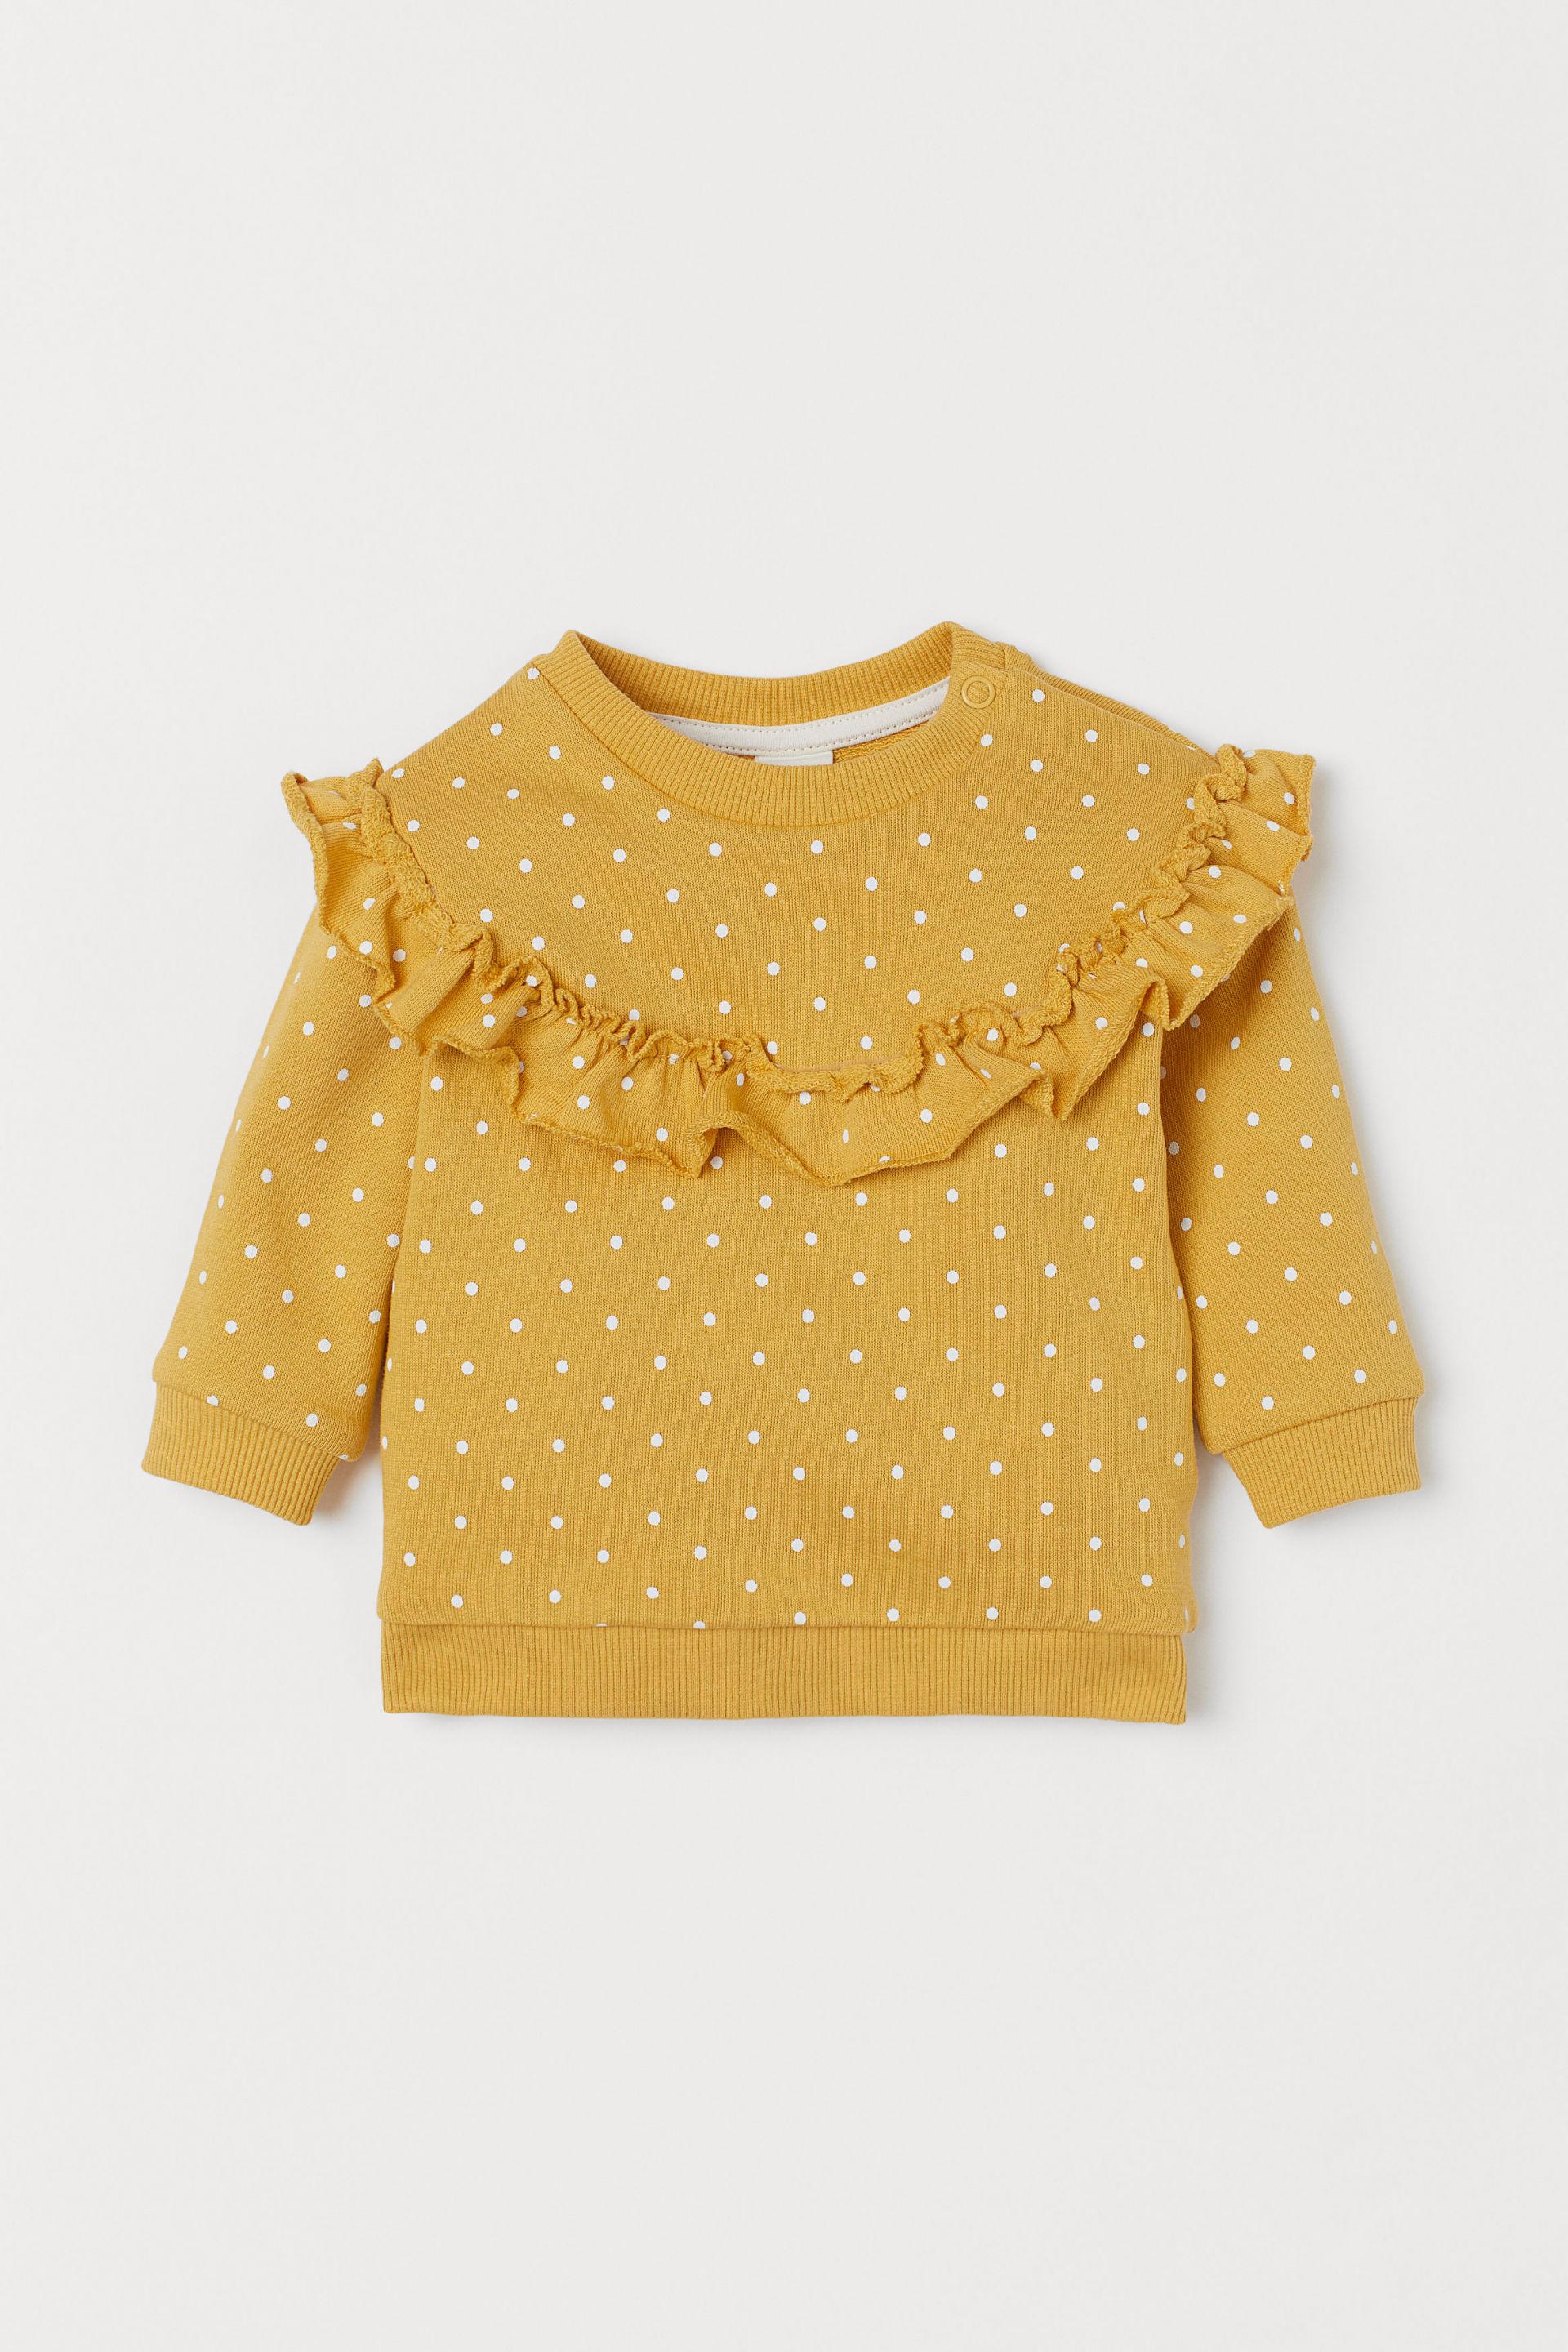 Sweatshirt-Yellow